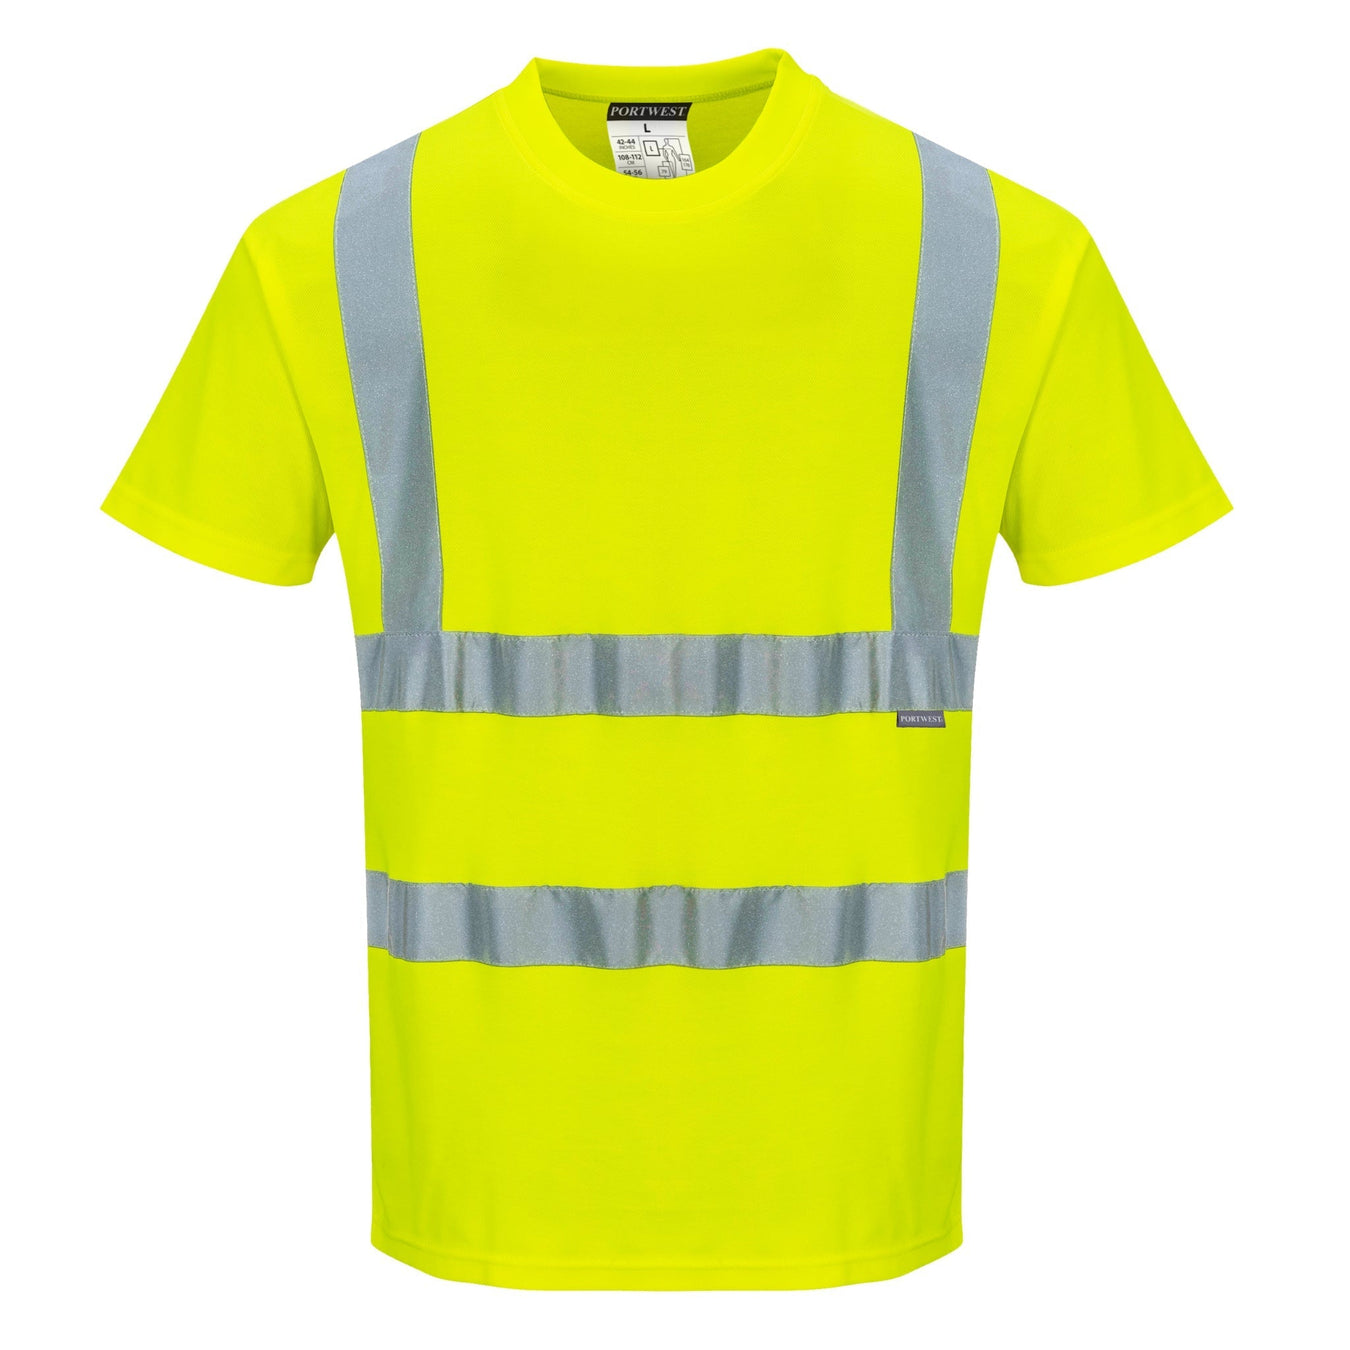 Portwest Hi Vis Safety Shirts